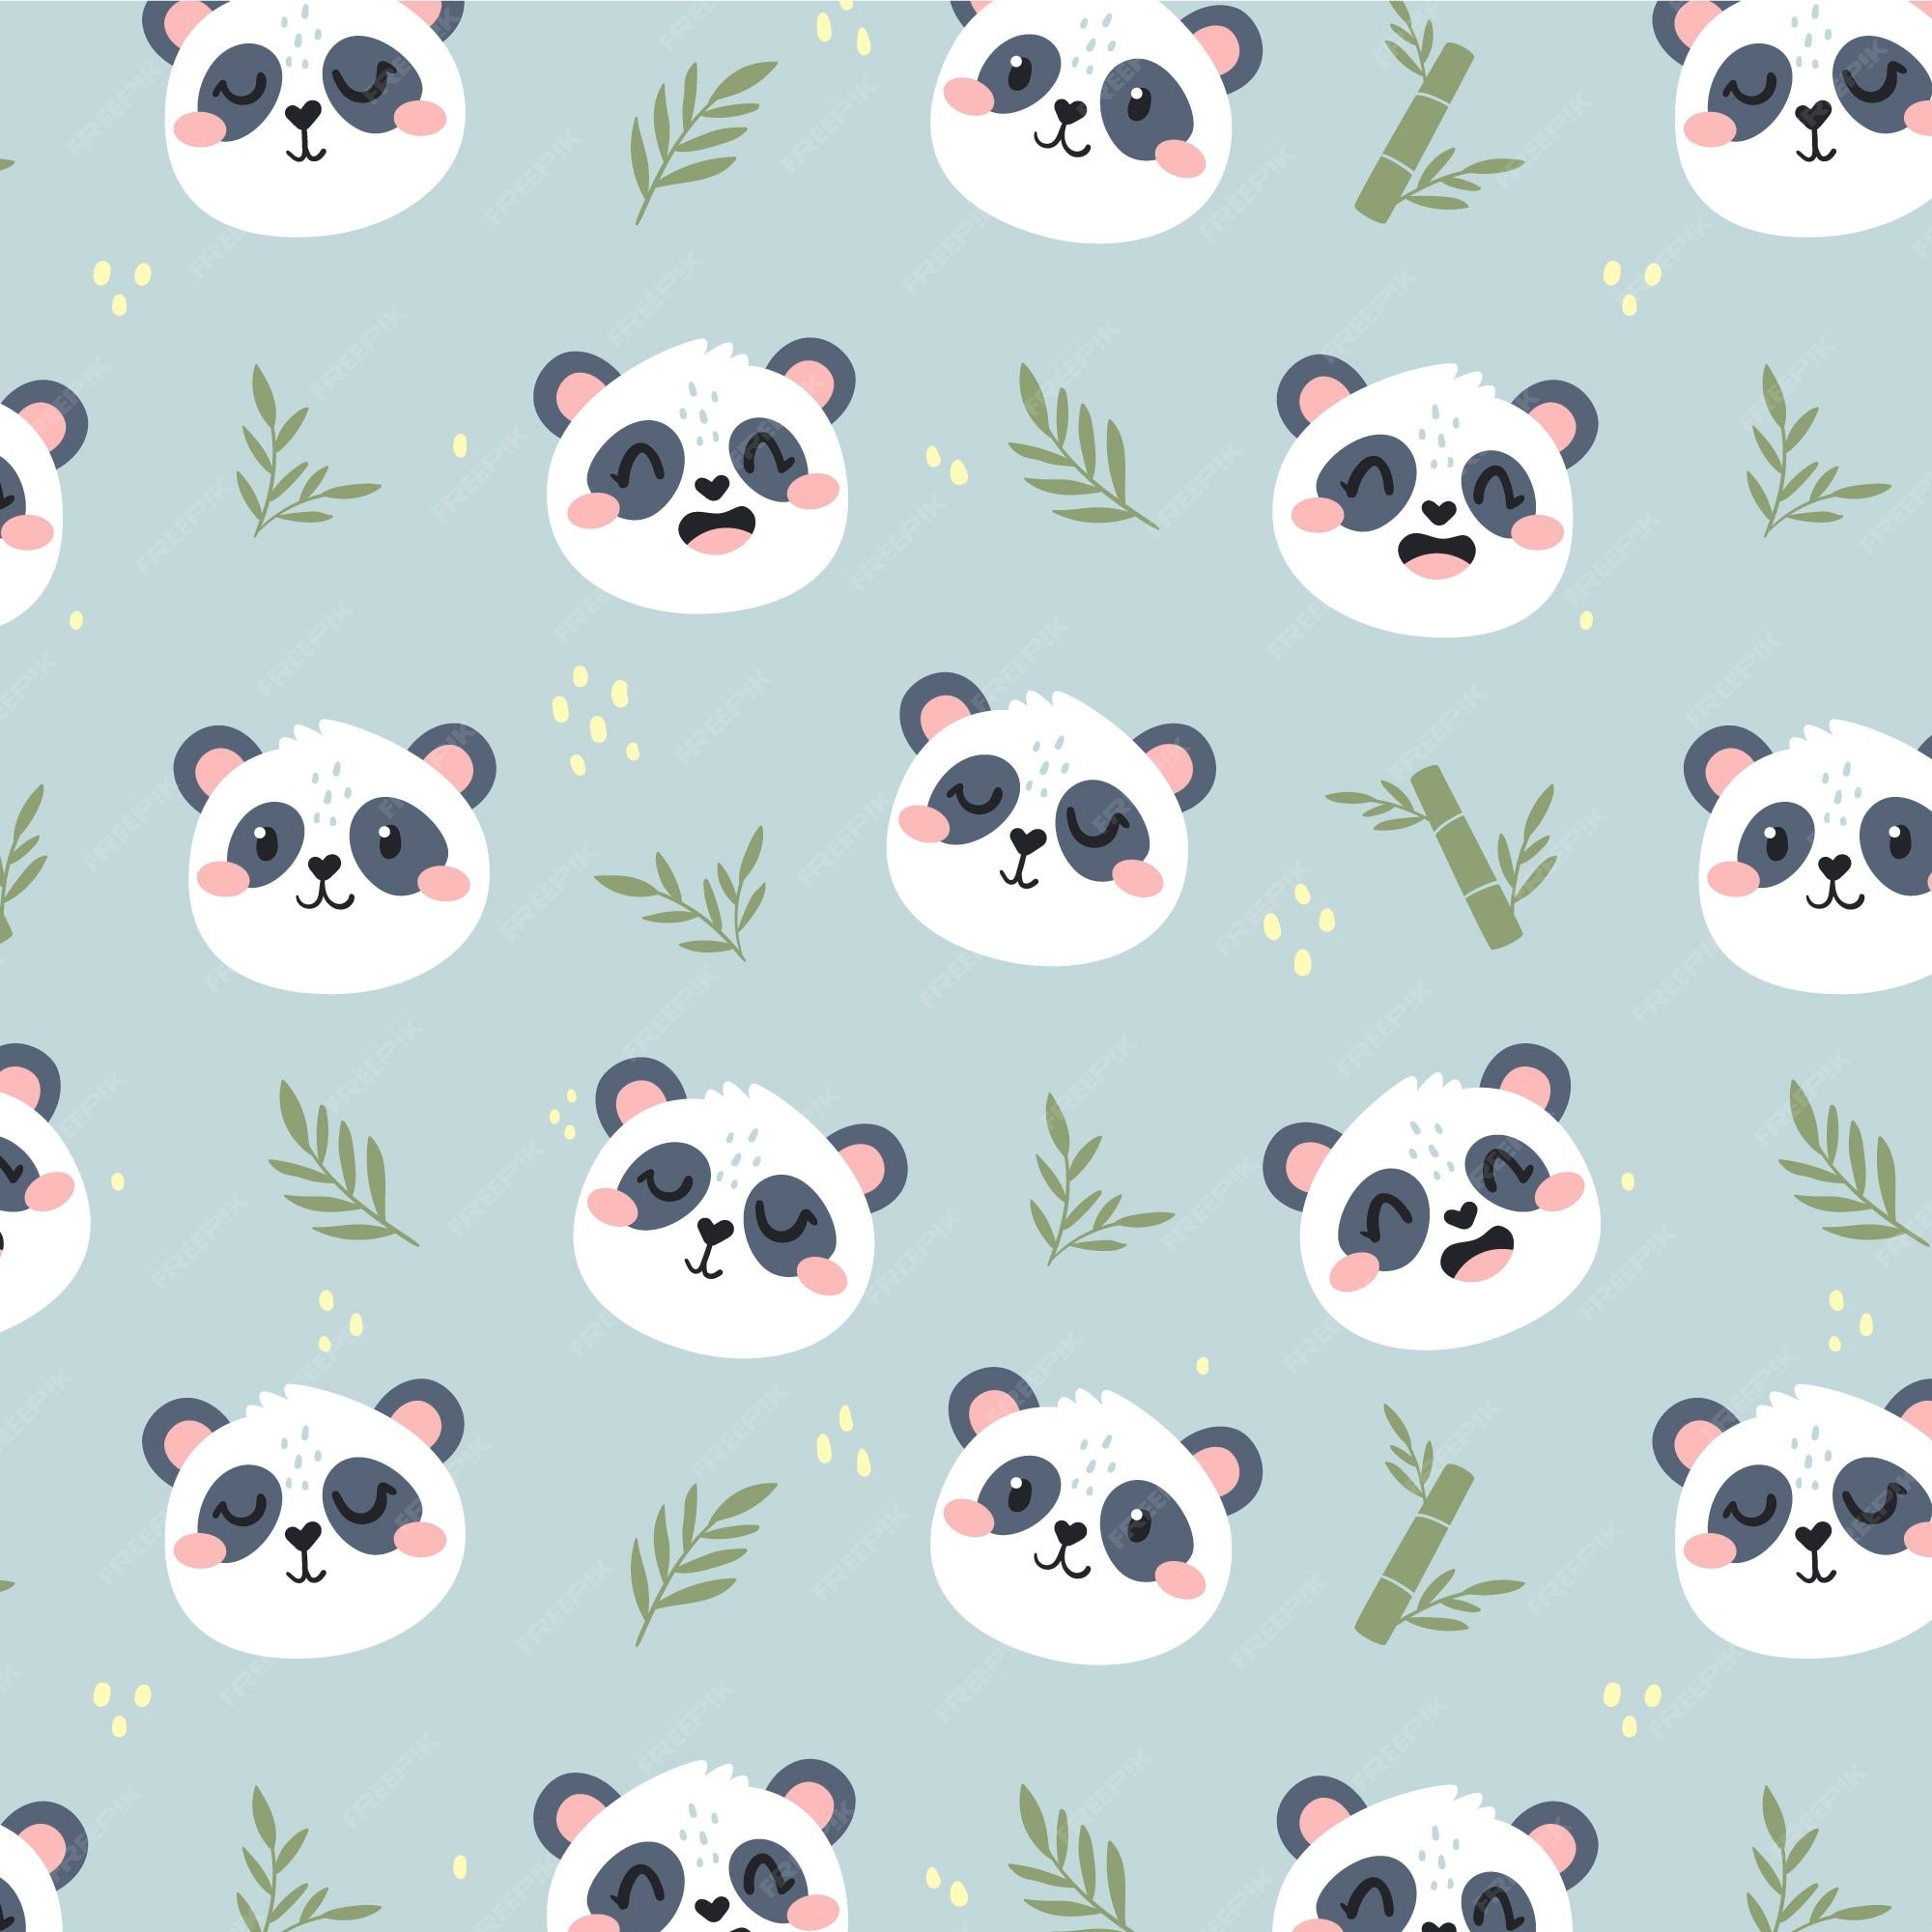 A pattern of pandas and bamboo - Panda